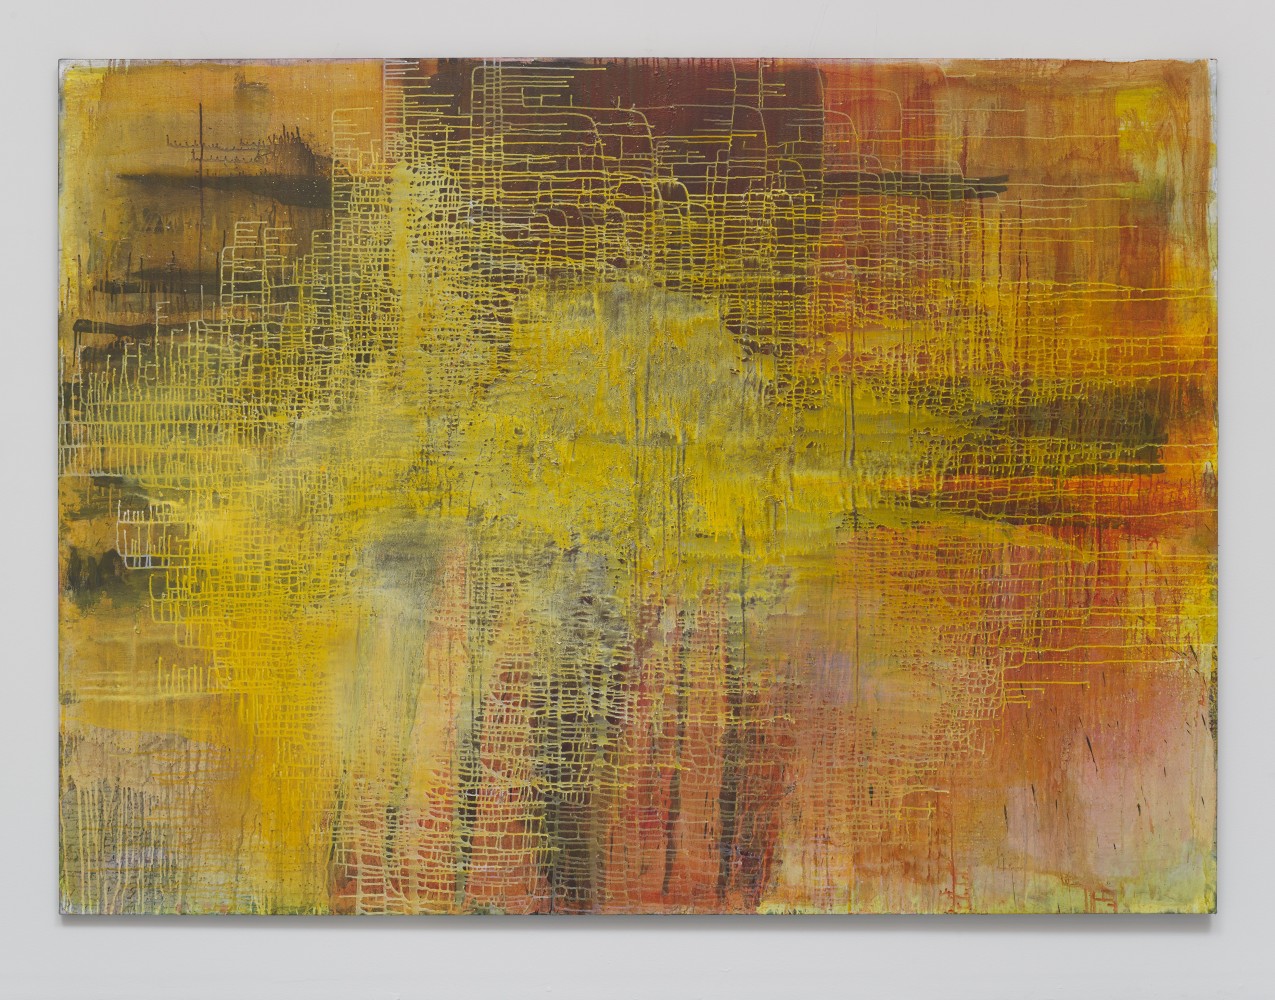 TJ Bohm

Untitled, 2020

Oil on canvas

72h x 96w in
182.88h x 243.84w cm